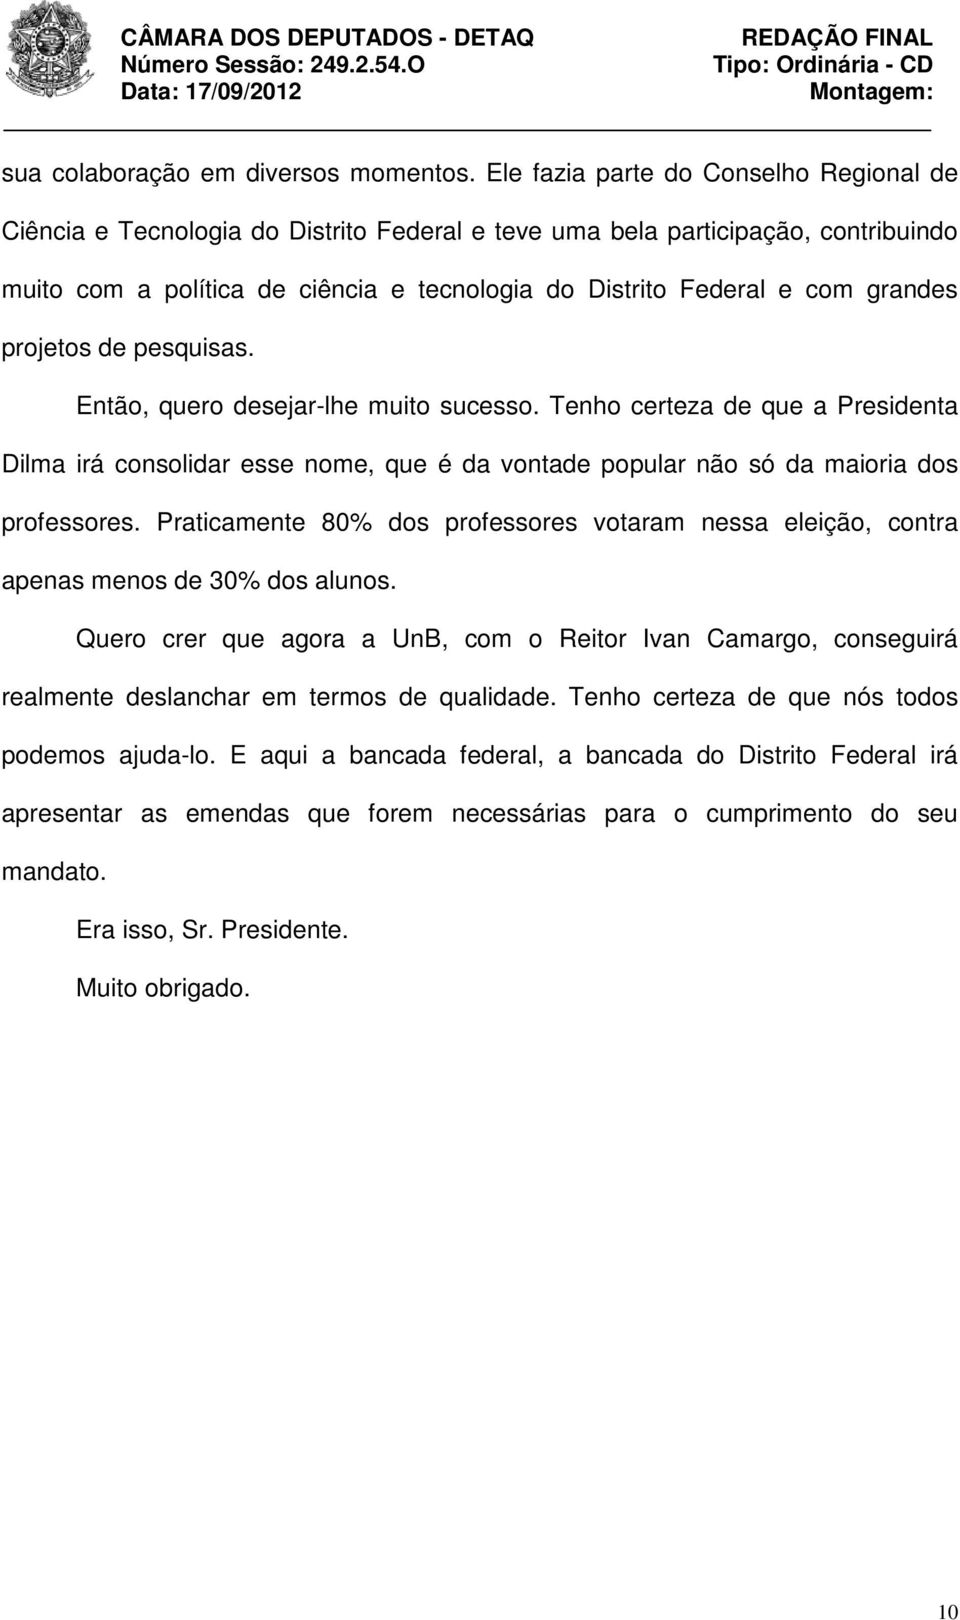 grandes projetos de pesquisas. Então, quero desejar-lhe muito sucesso. Tenho certeza de que a Presidenta Dilma irá consolidar esse nome, que é da vontade popular não só da maioria dos professores.